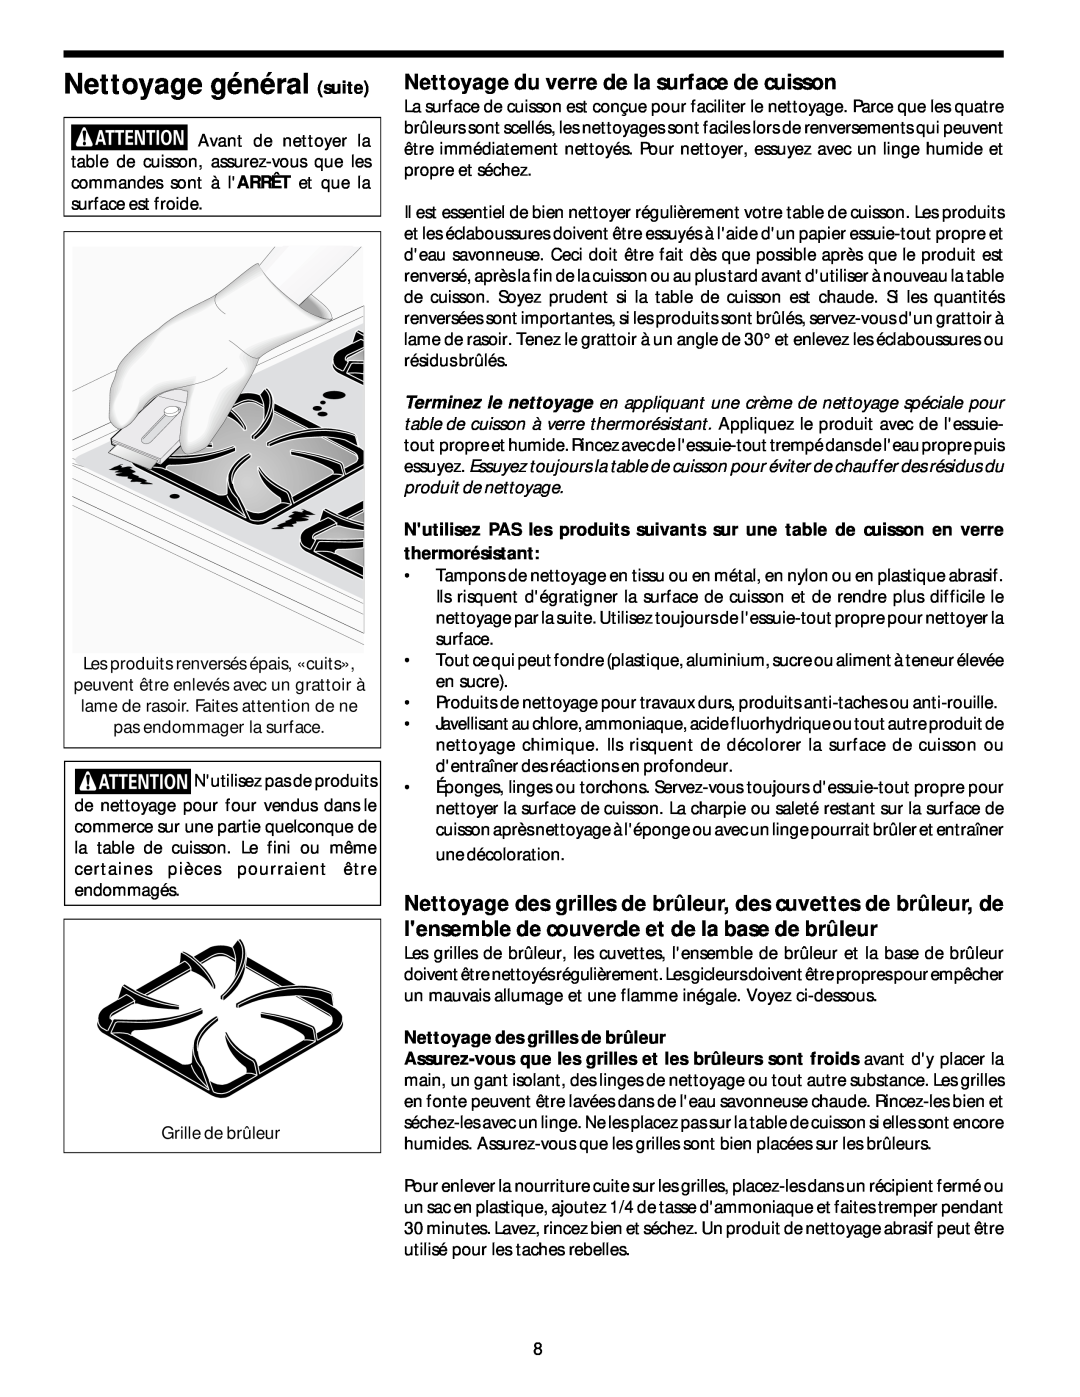 Frigidaire 318068129 important safety instructions Nettoyage général suite, Nettoyage du verre de la surface de cuisson 